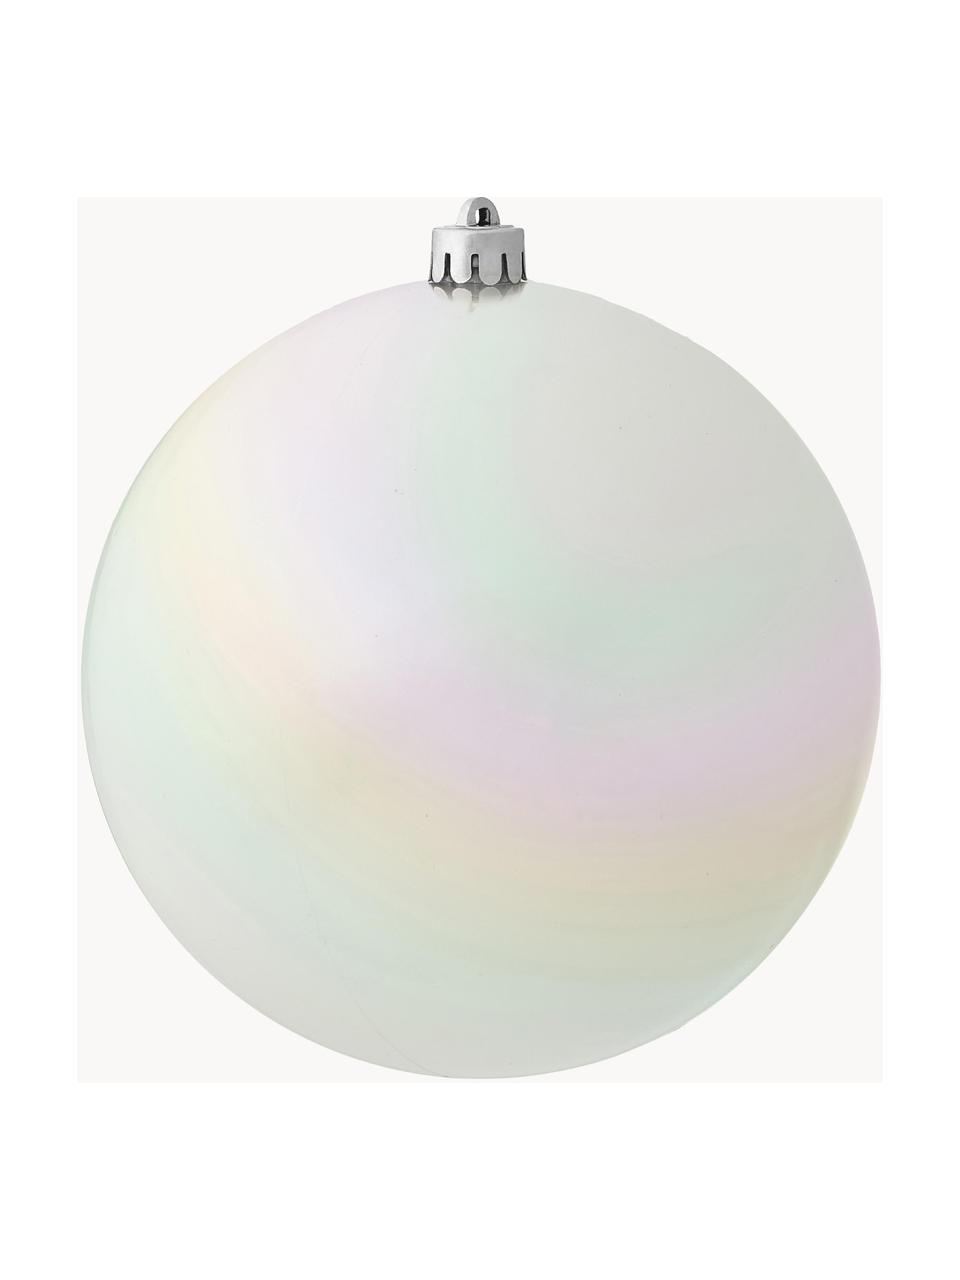 Boule de Noël incassable Stix, Plastique robuste, Blanc, multicolore, Ø 14 cm, 2 pièces